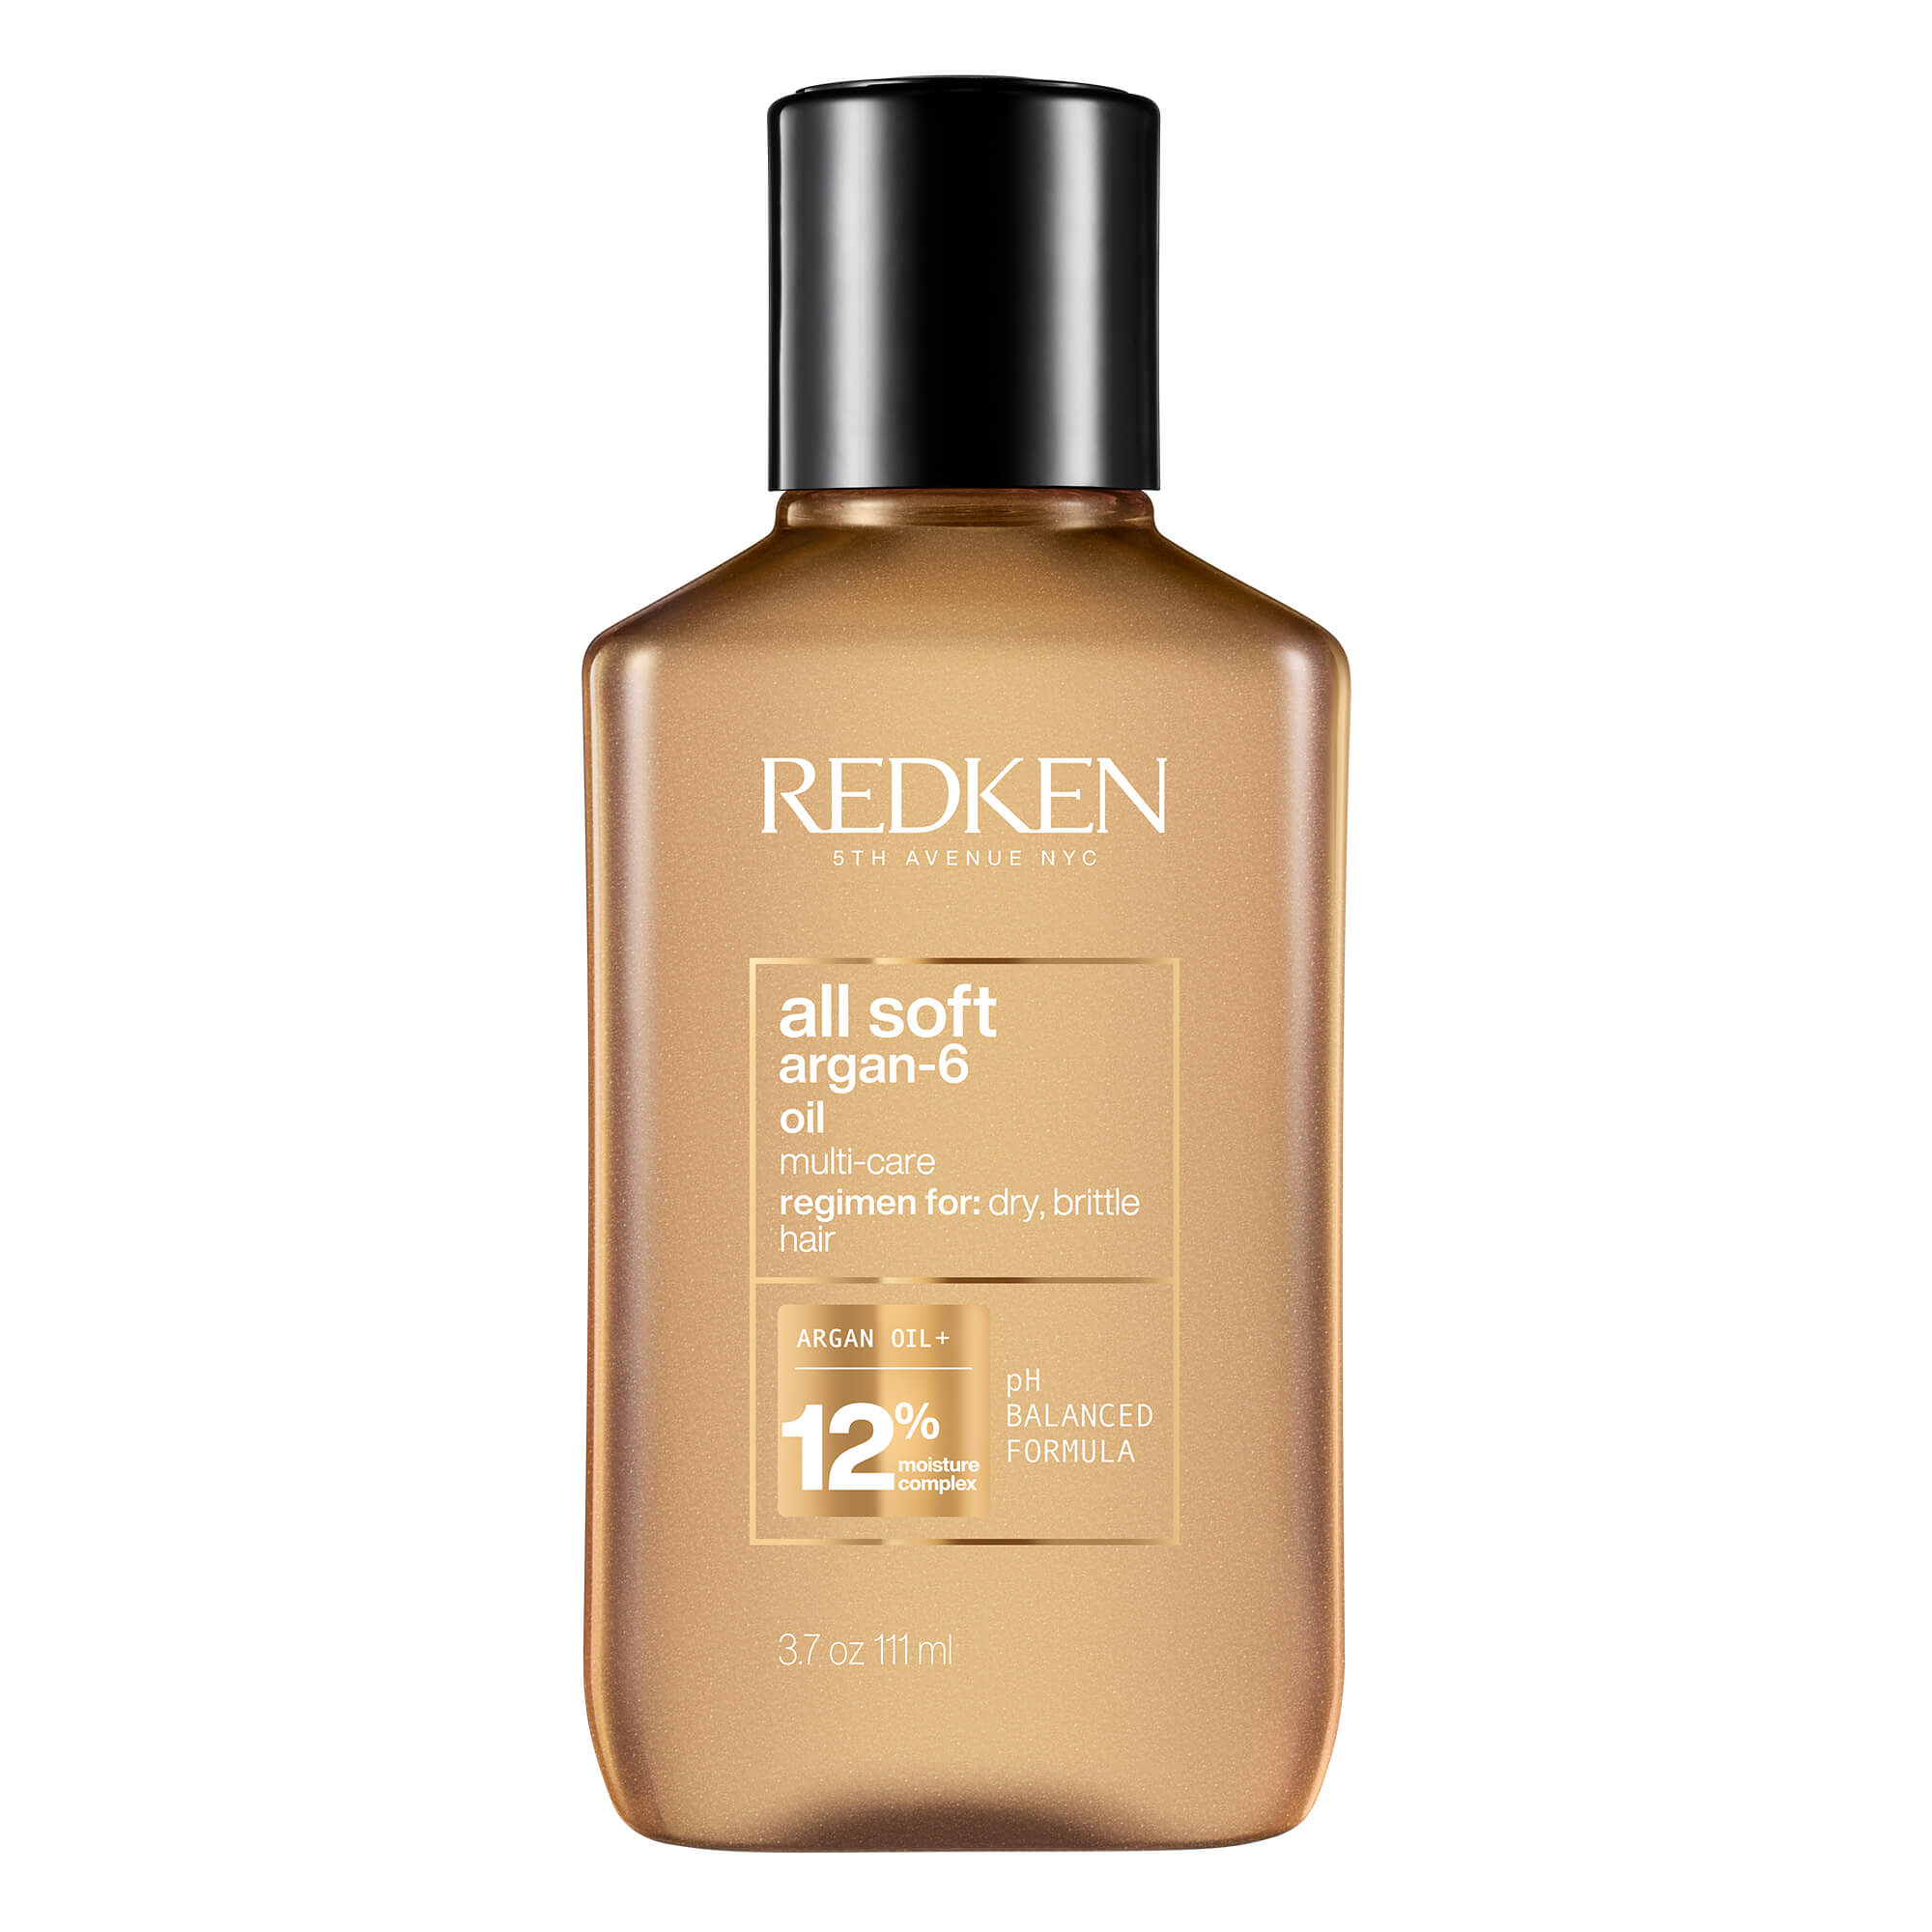 Redken All Soft Argan-6 Oil for Dry Hair